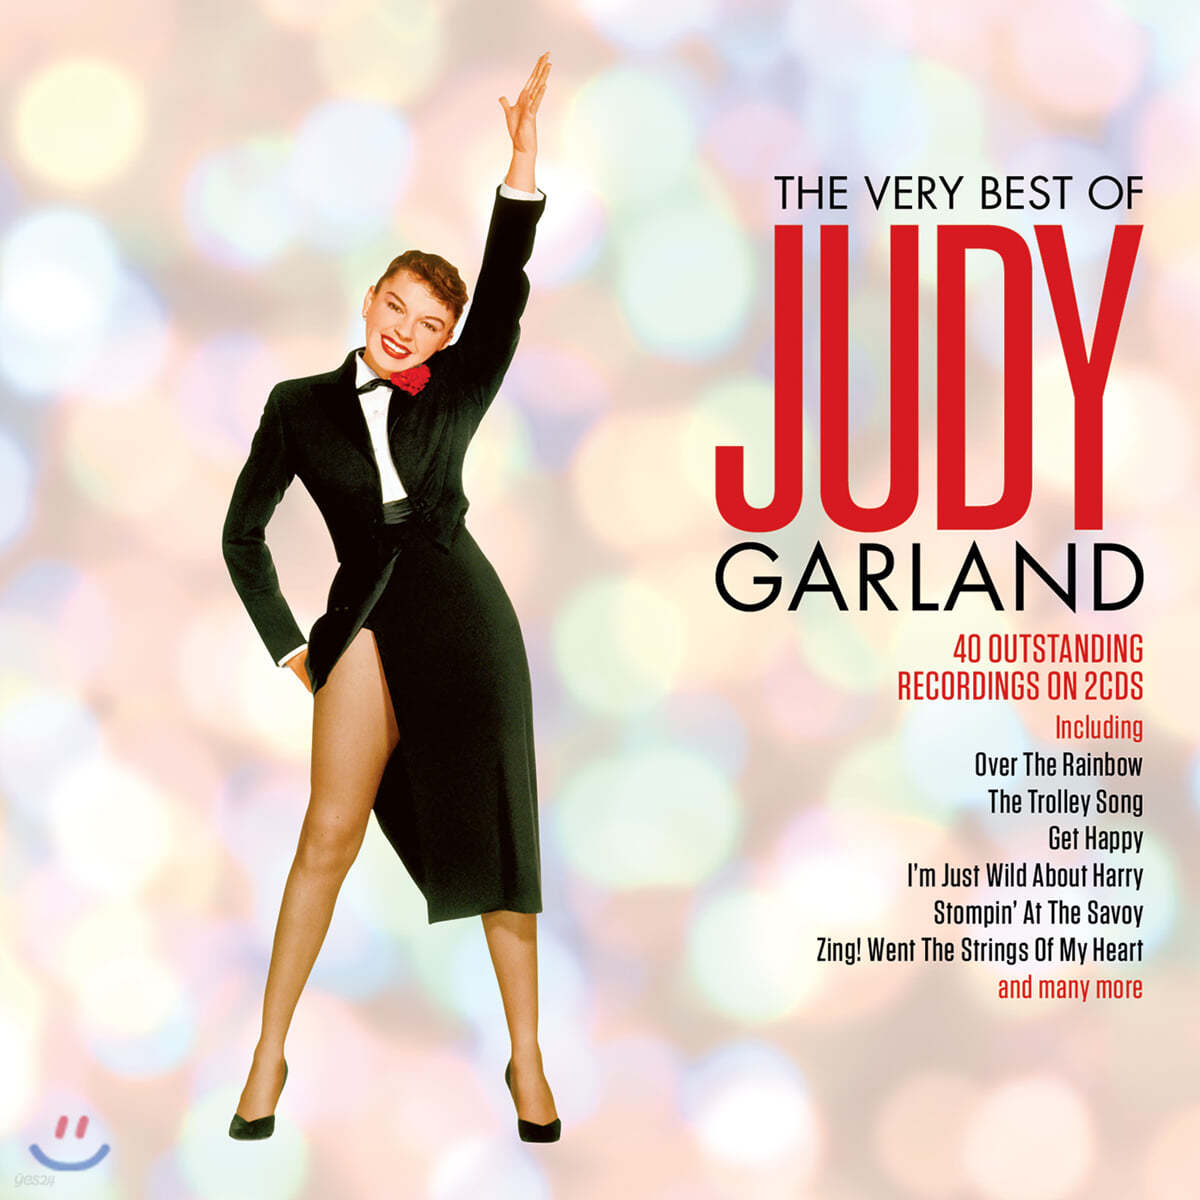 Judy Garland (주디 갈랜드) - The Very Best of Judy Garland